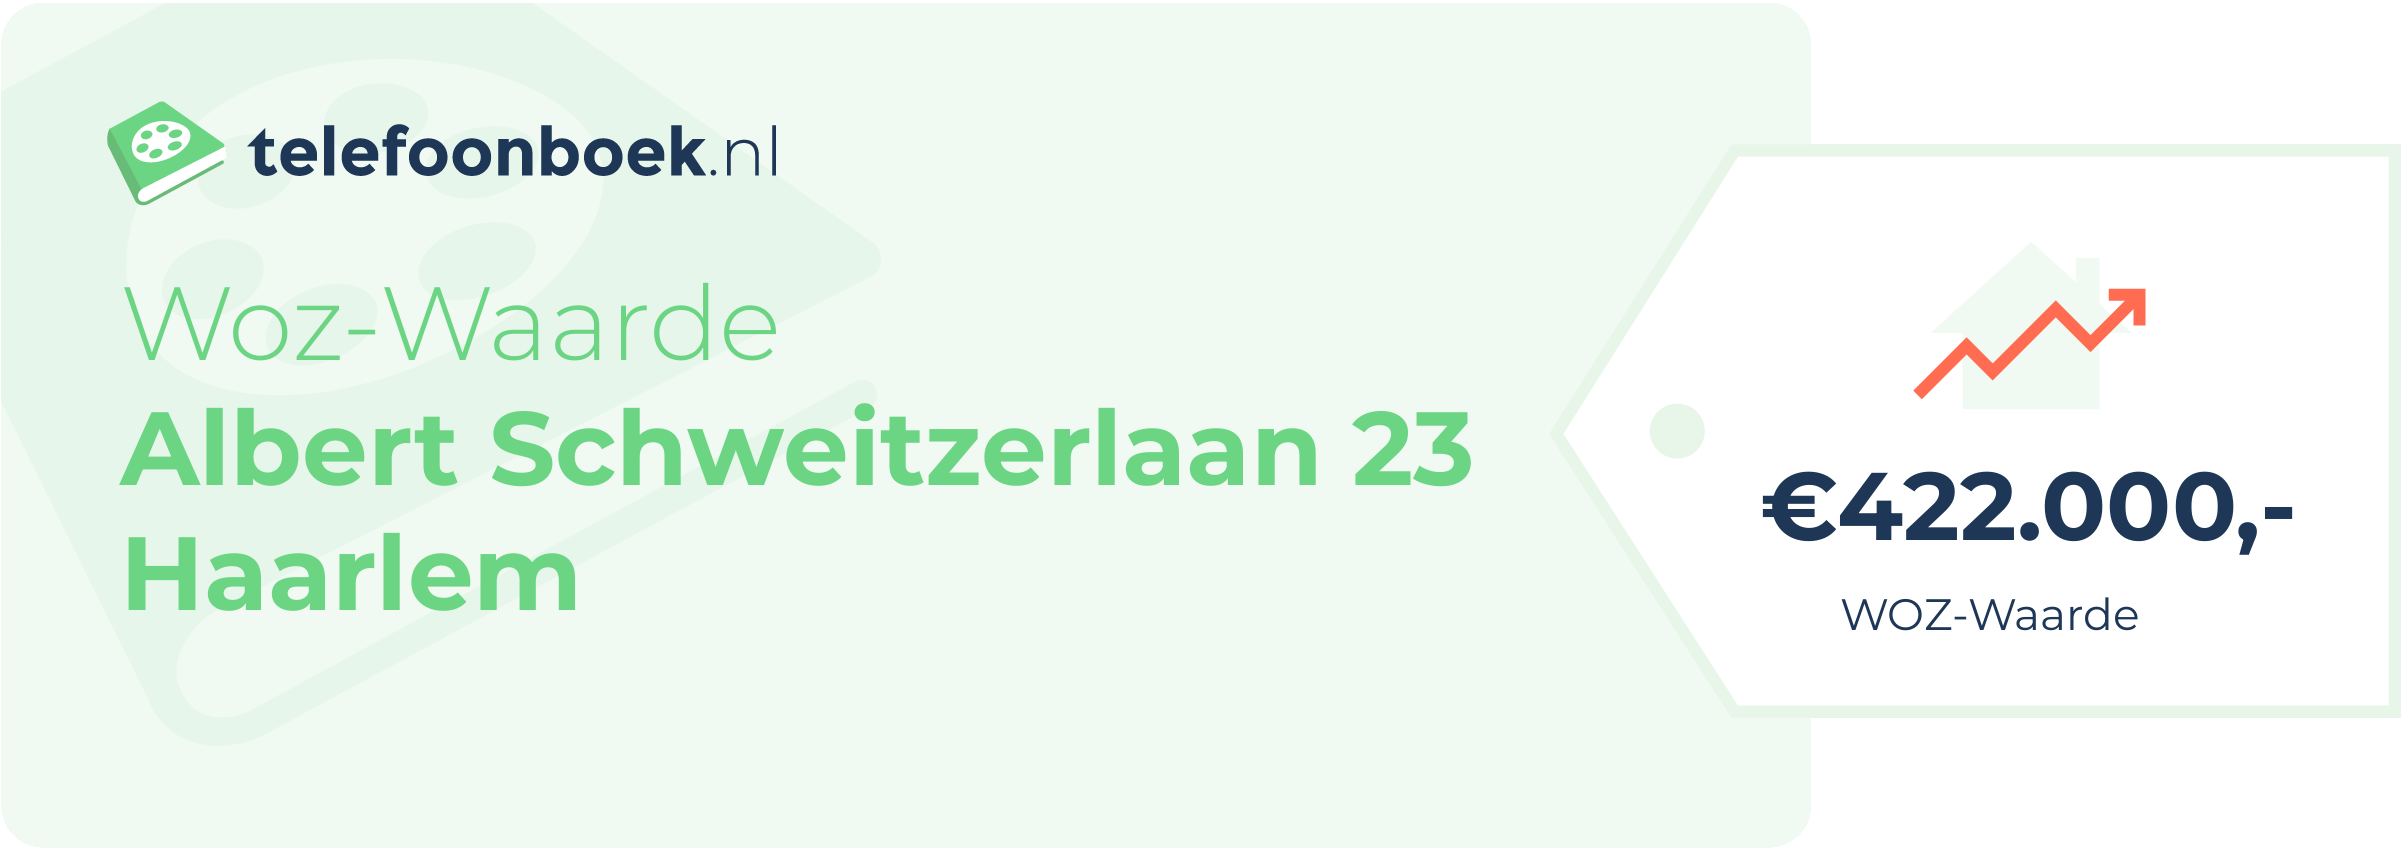 WOZ-waarde Albert Schweitzerlaan 23 Haarlem